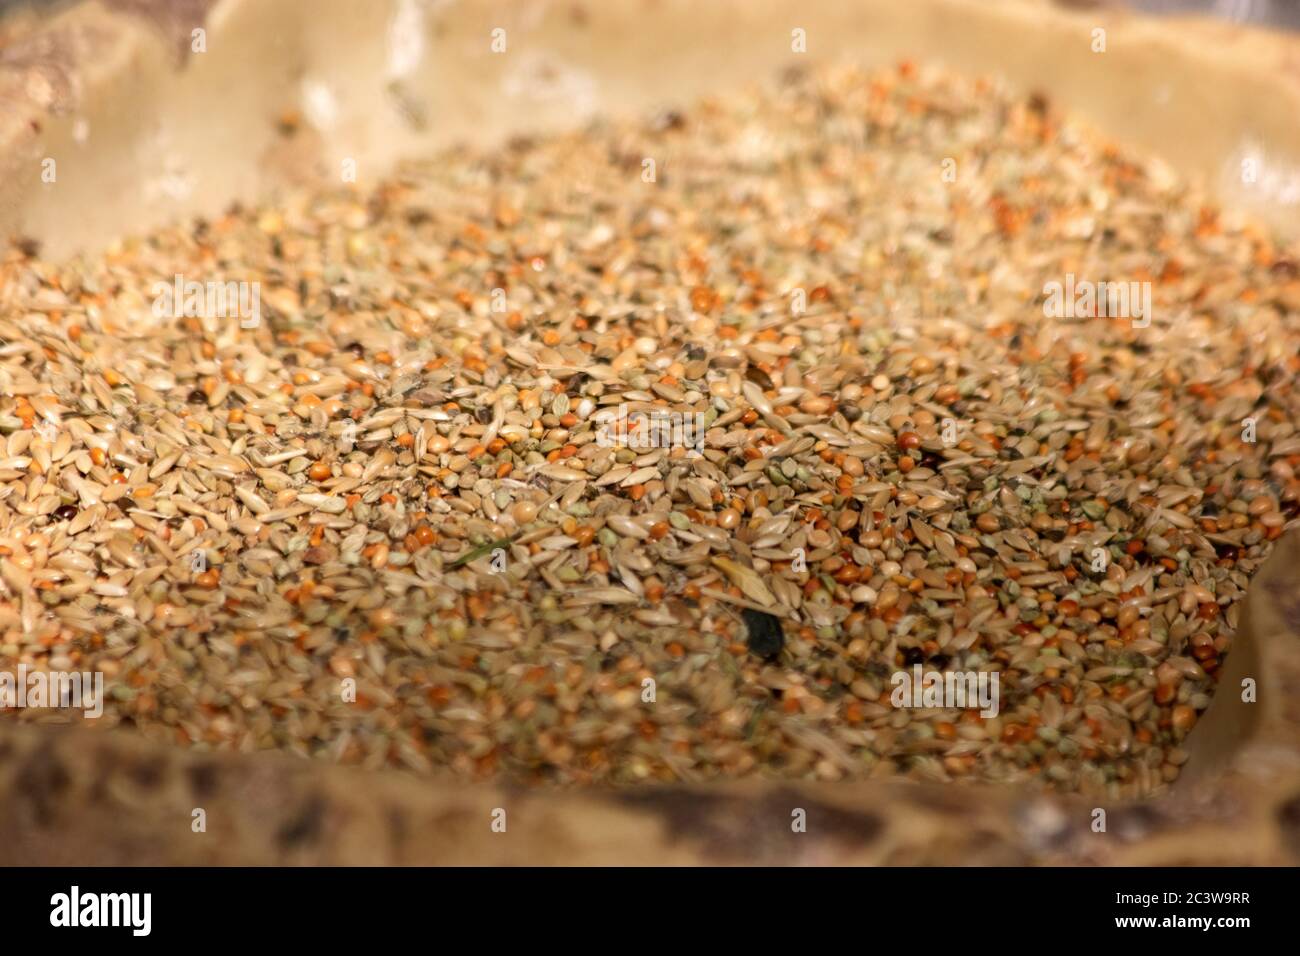 Mixed bird seeds close up. Stock Photo